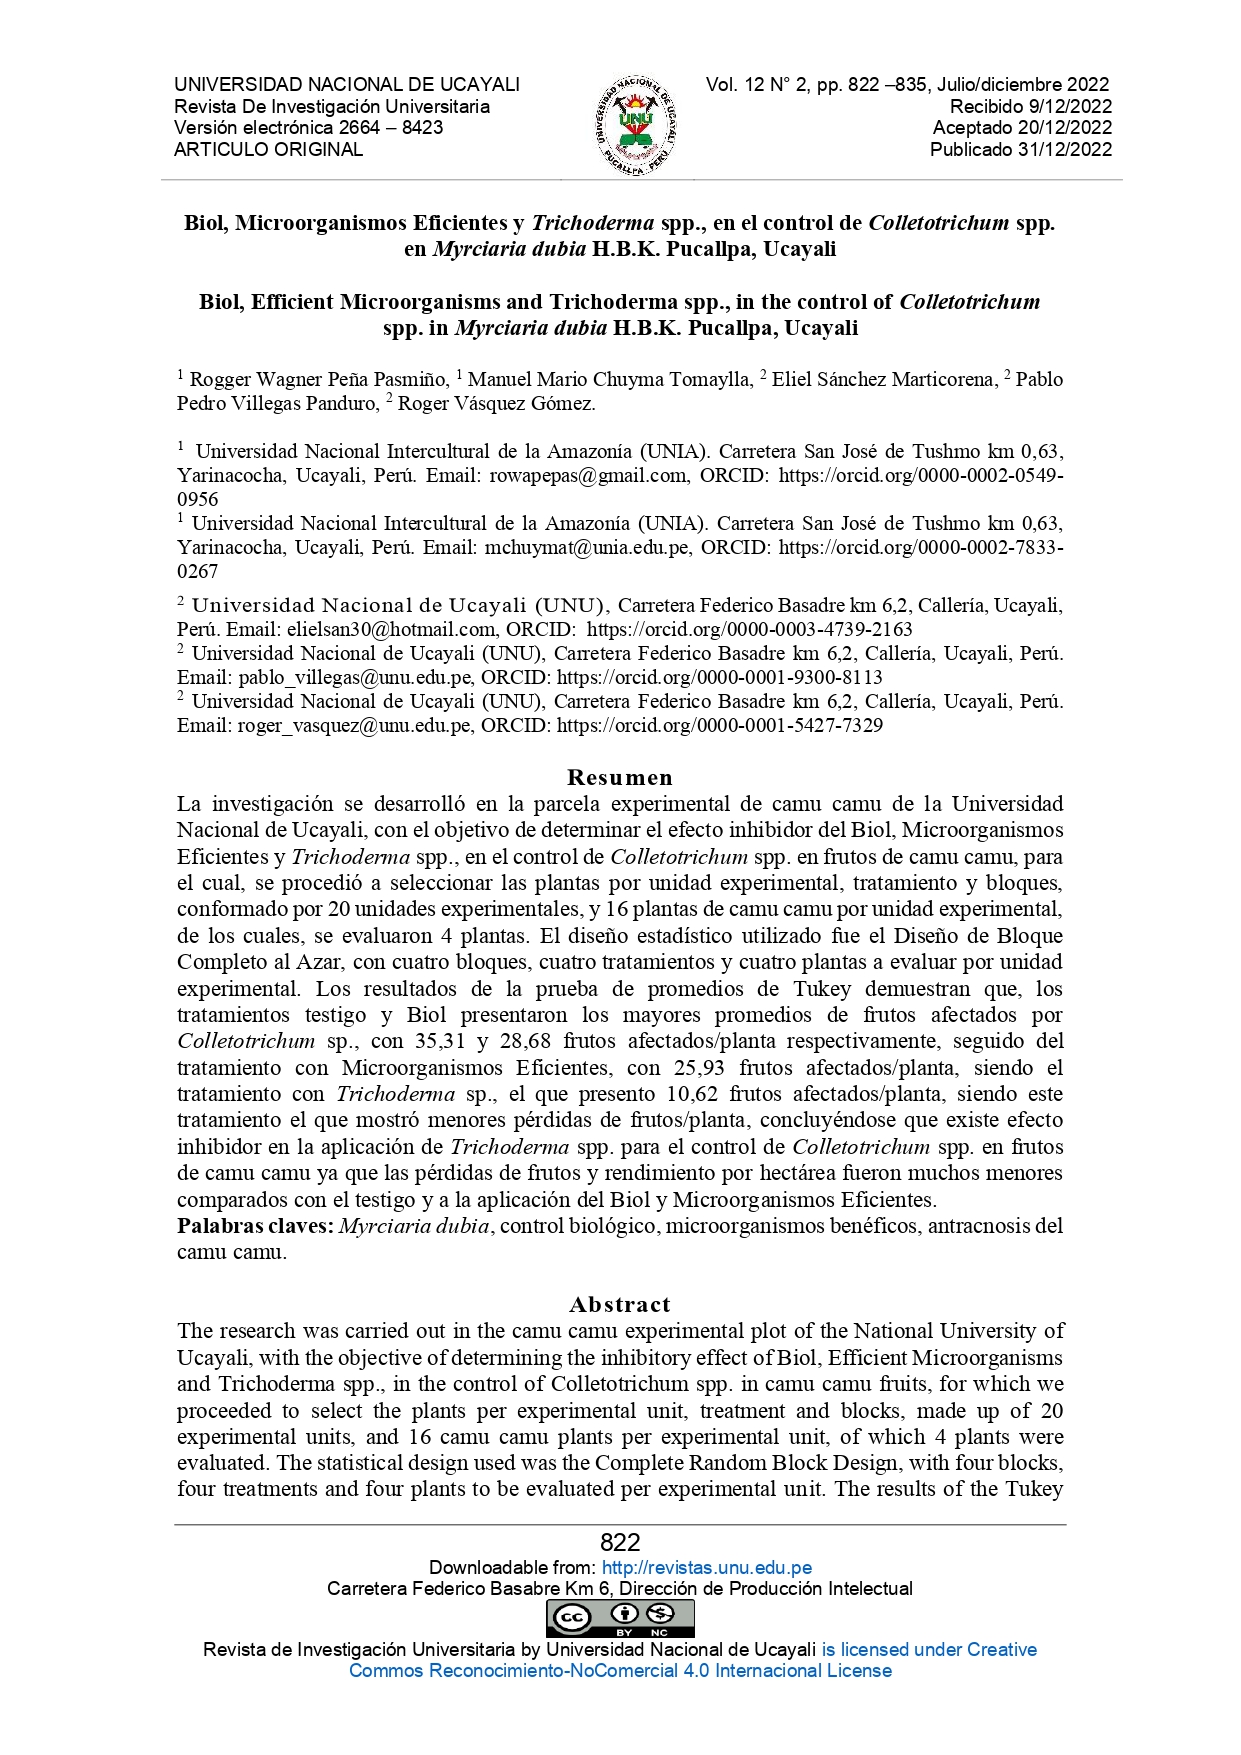 Biol, Microorganismos Eficientes y Trichoderma spp., en el control de Colletotrichum spp. en Myrciaria dubia H.B.K. Pucallpa, Ucayali